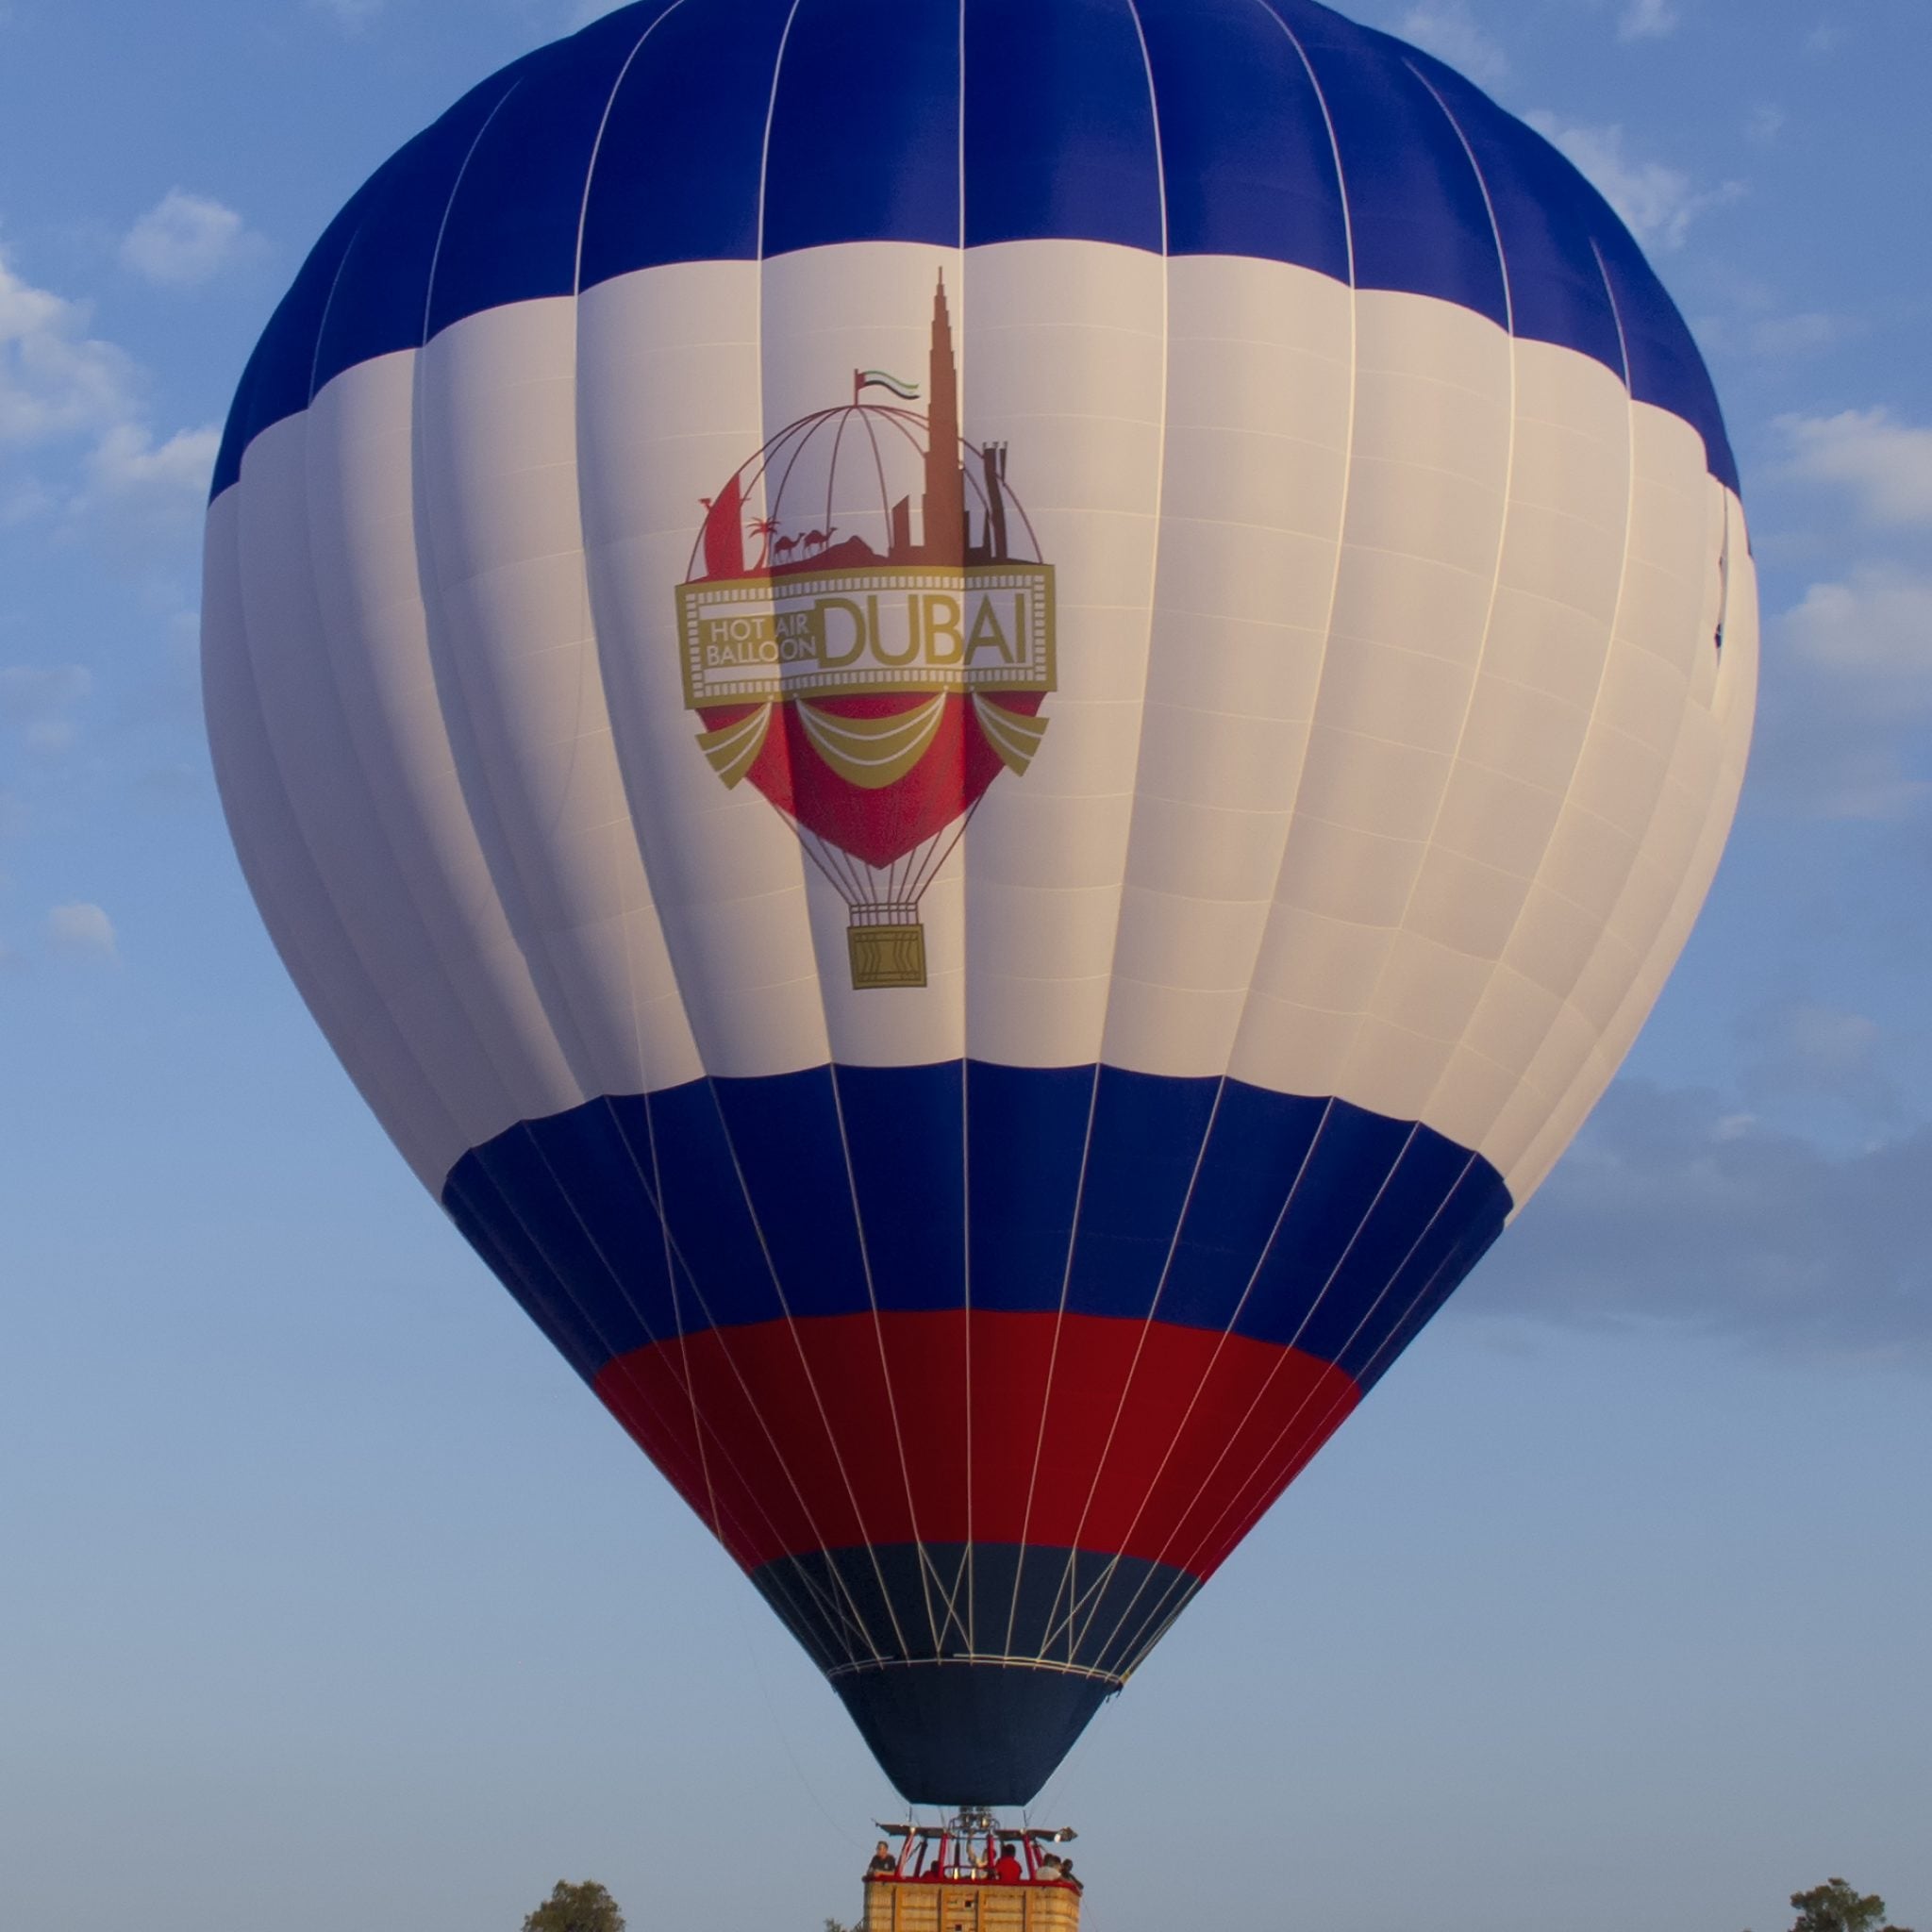 Amazing View of Hot Air Balloon Dubai